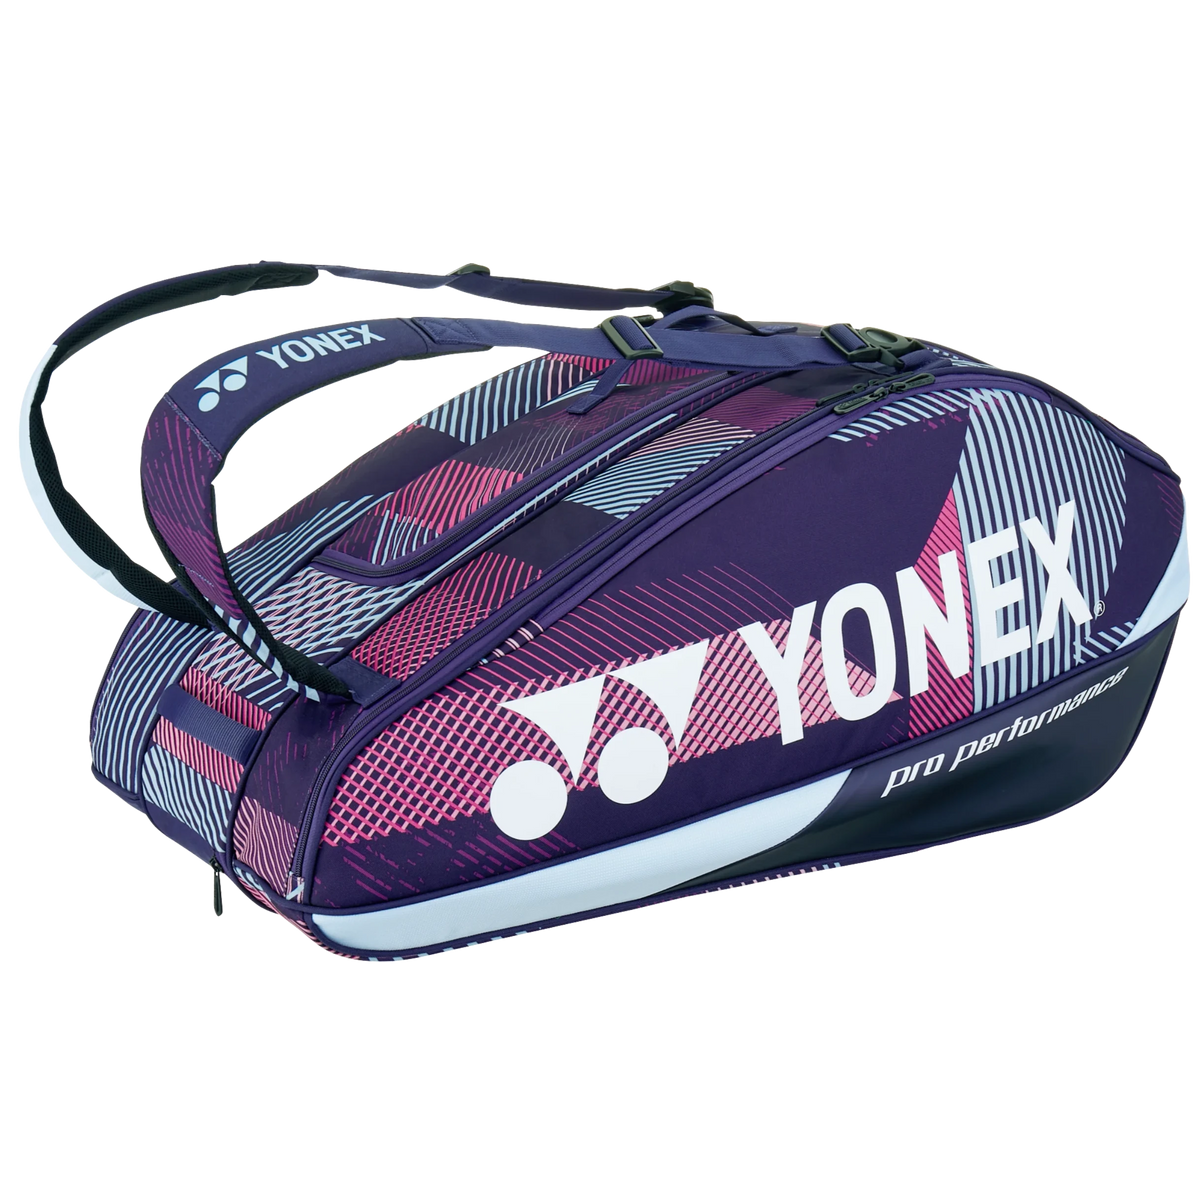 Yonex Racketbag 92429 grape